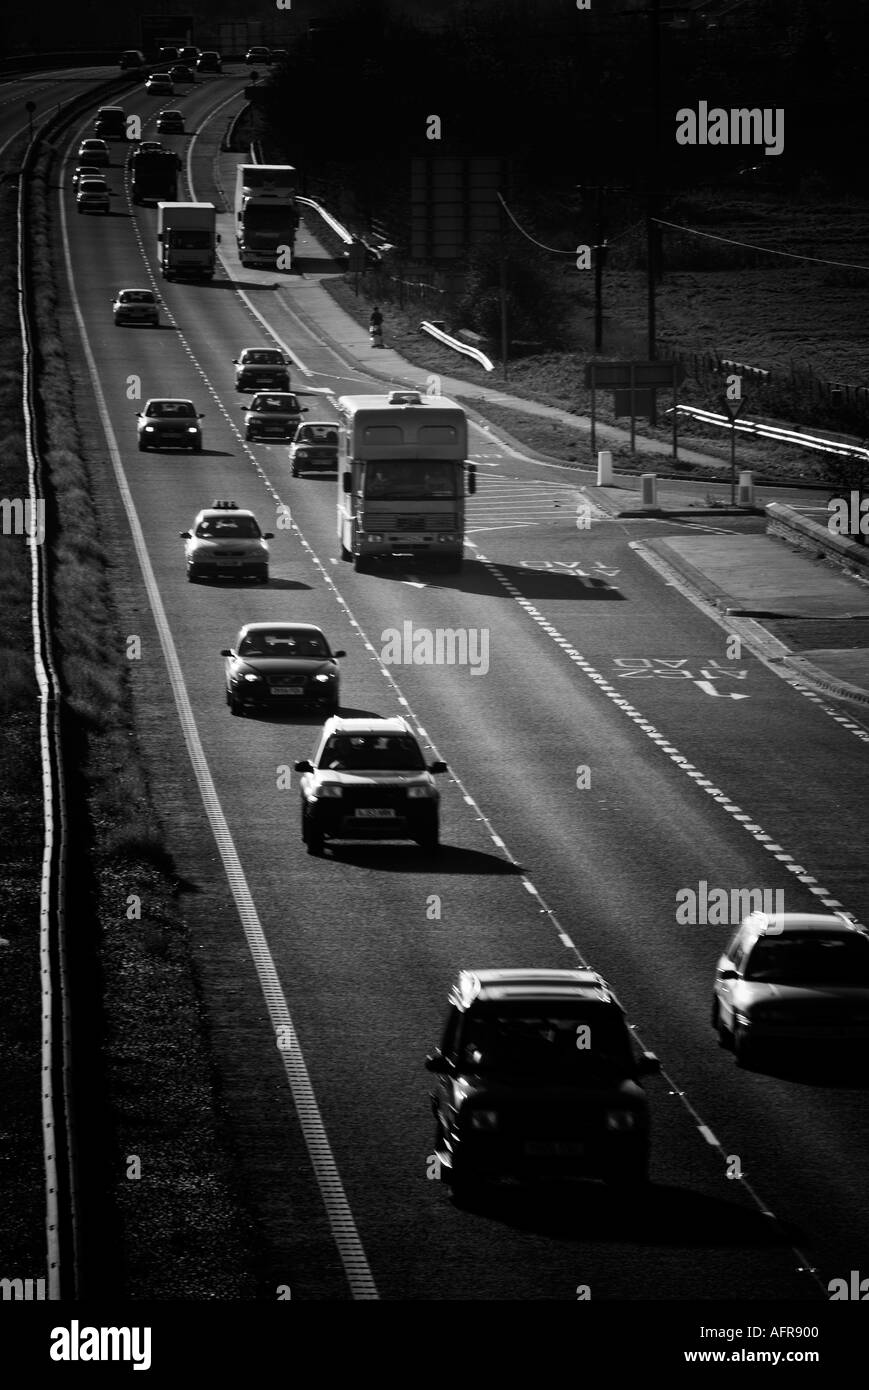 beschäftigt eine Straße 1 Autobahn Verkehr Autobahn Reisen Langstrecken durchkreuzen Öl Verbrauch Auto LKW LKW Spedition Transport journ Stockfoto